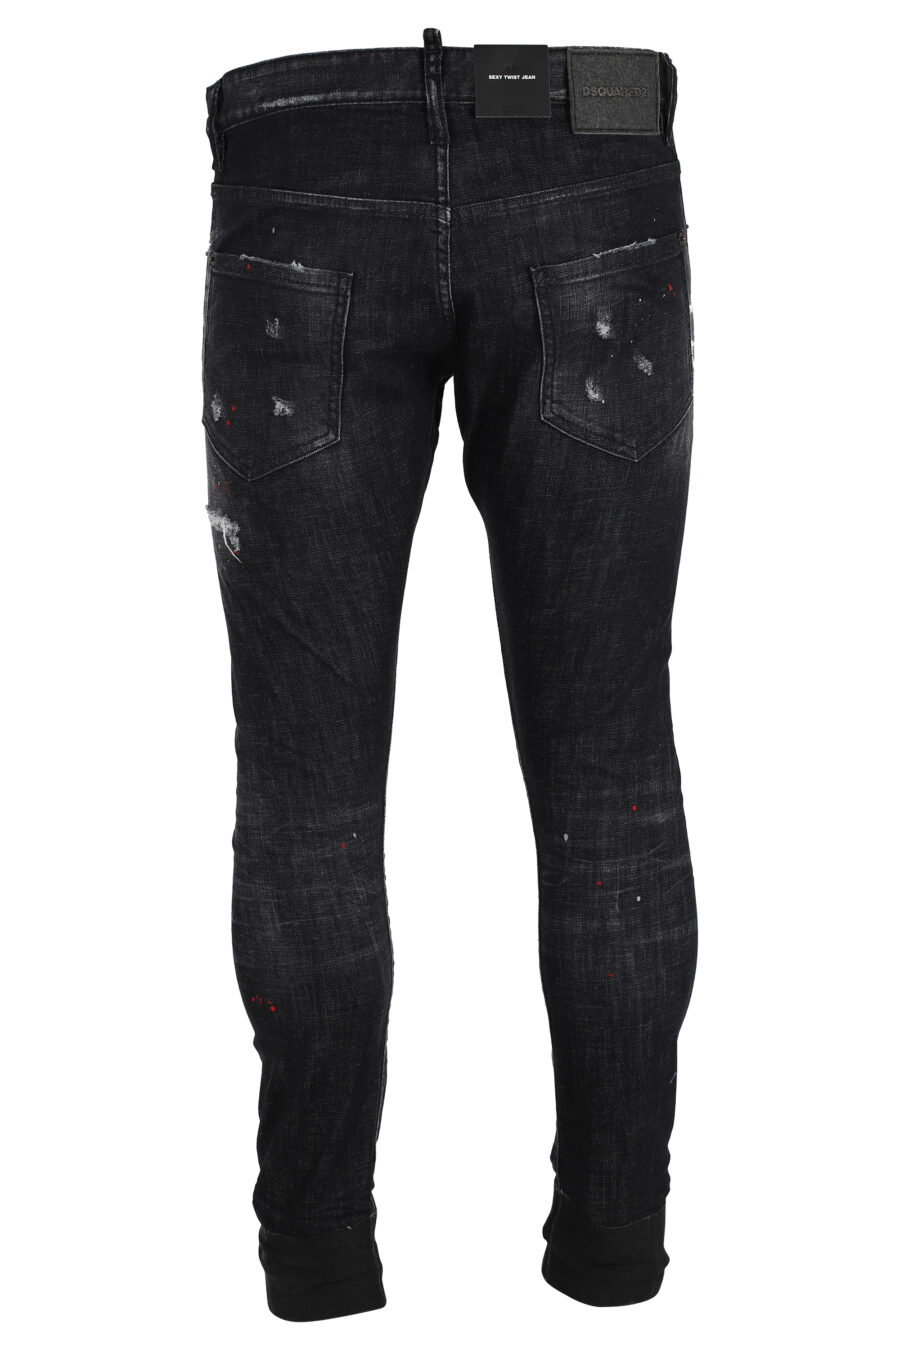 Sexy Twist-Denim-Jeans, schwarz ausgefranst - IMG 4857